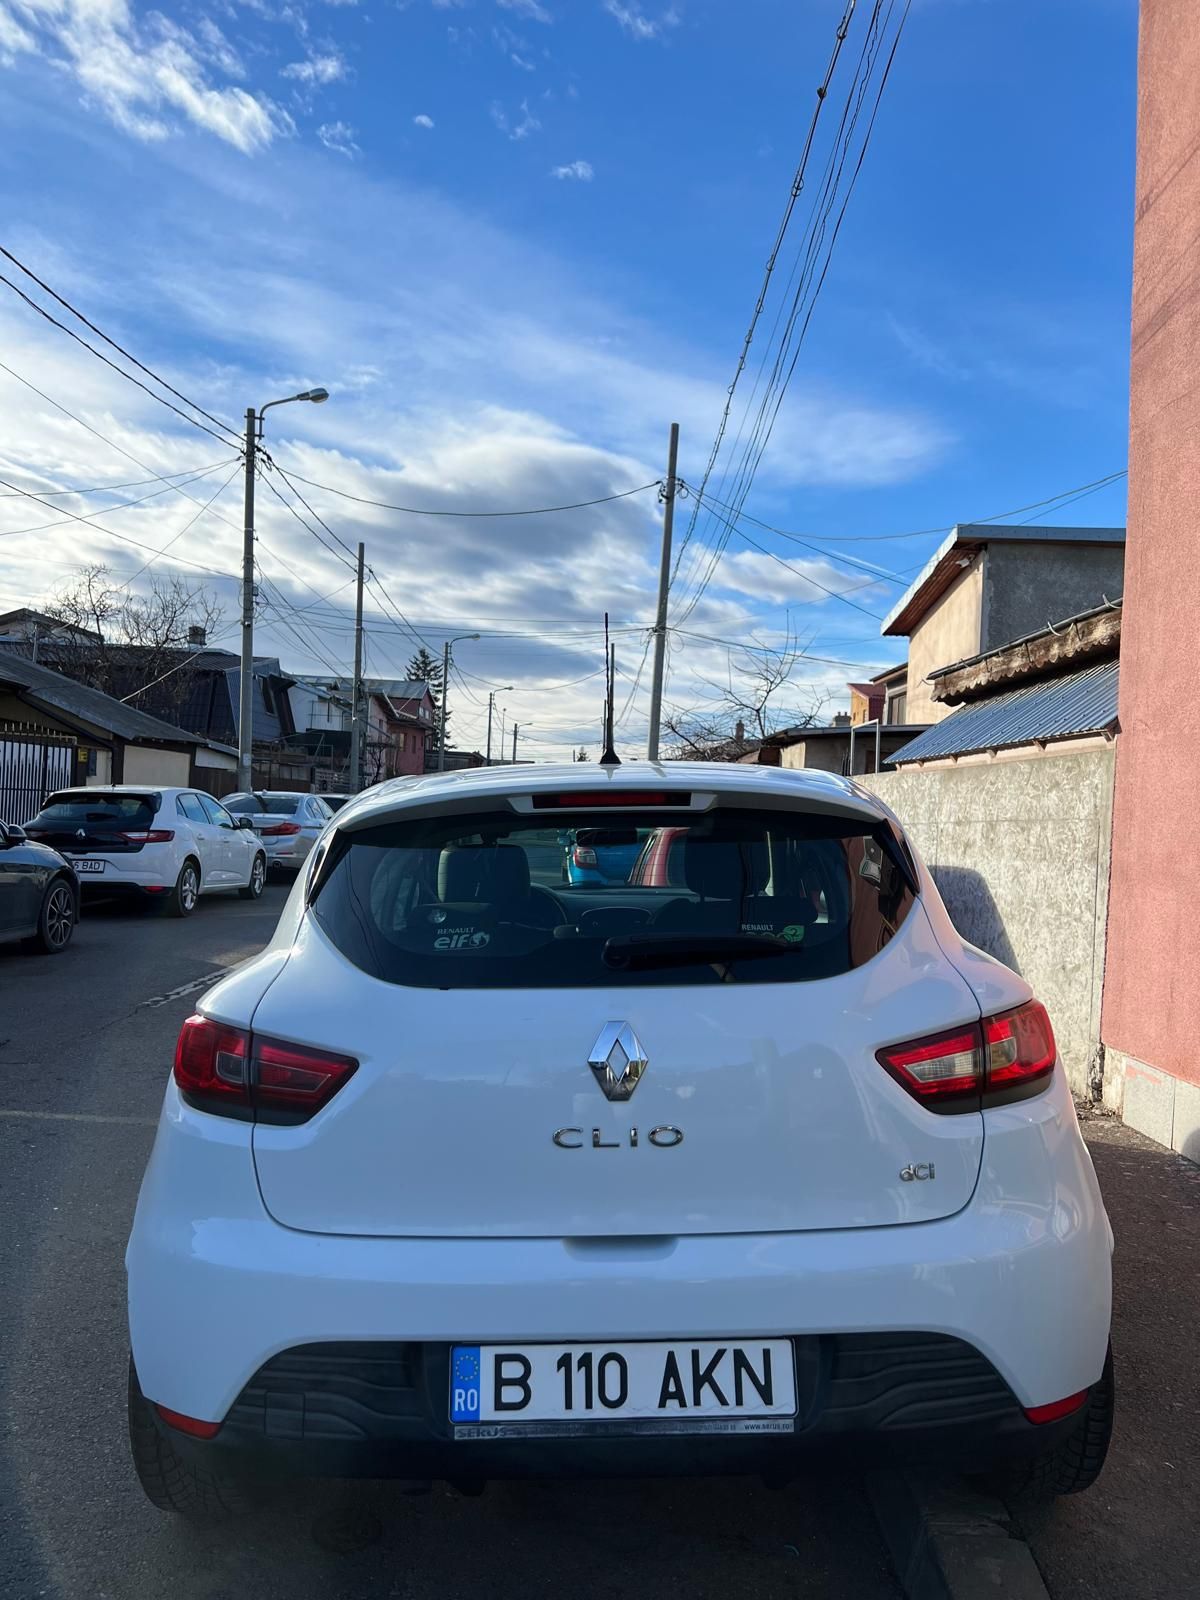 Renault Clio 4 1.5 dci